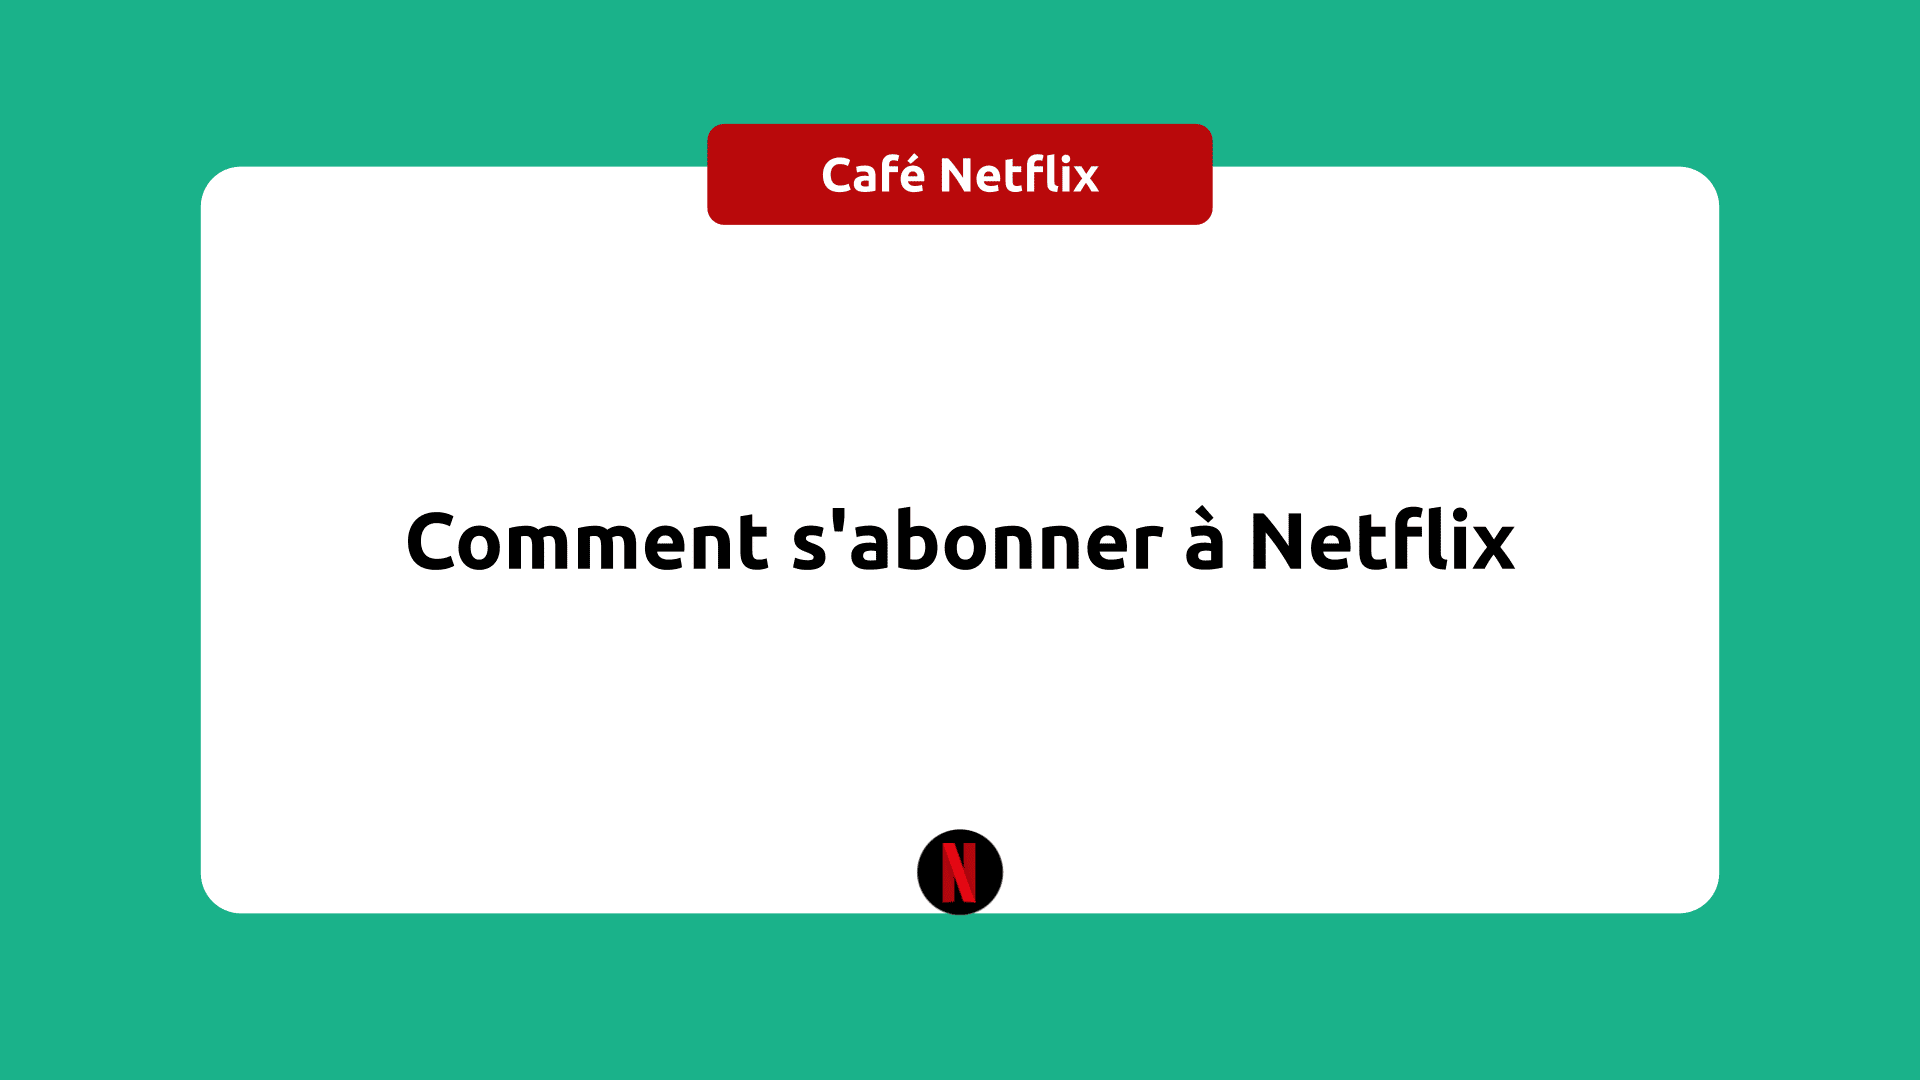 Comment Faire Pour Sabonner à Netflix